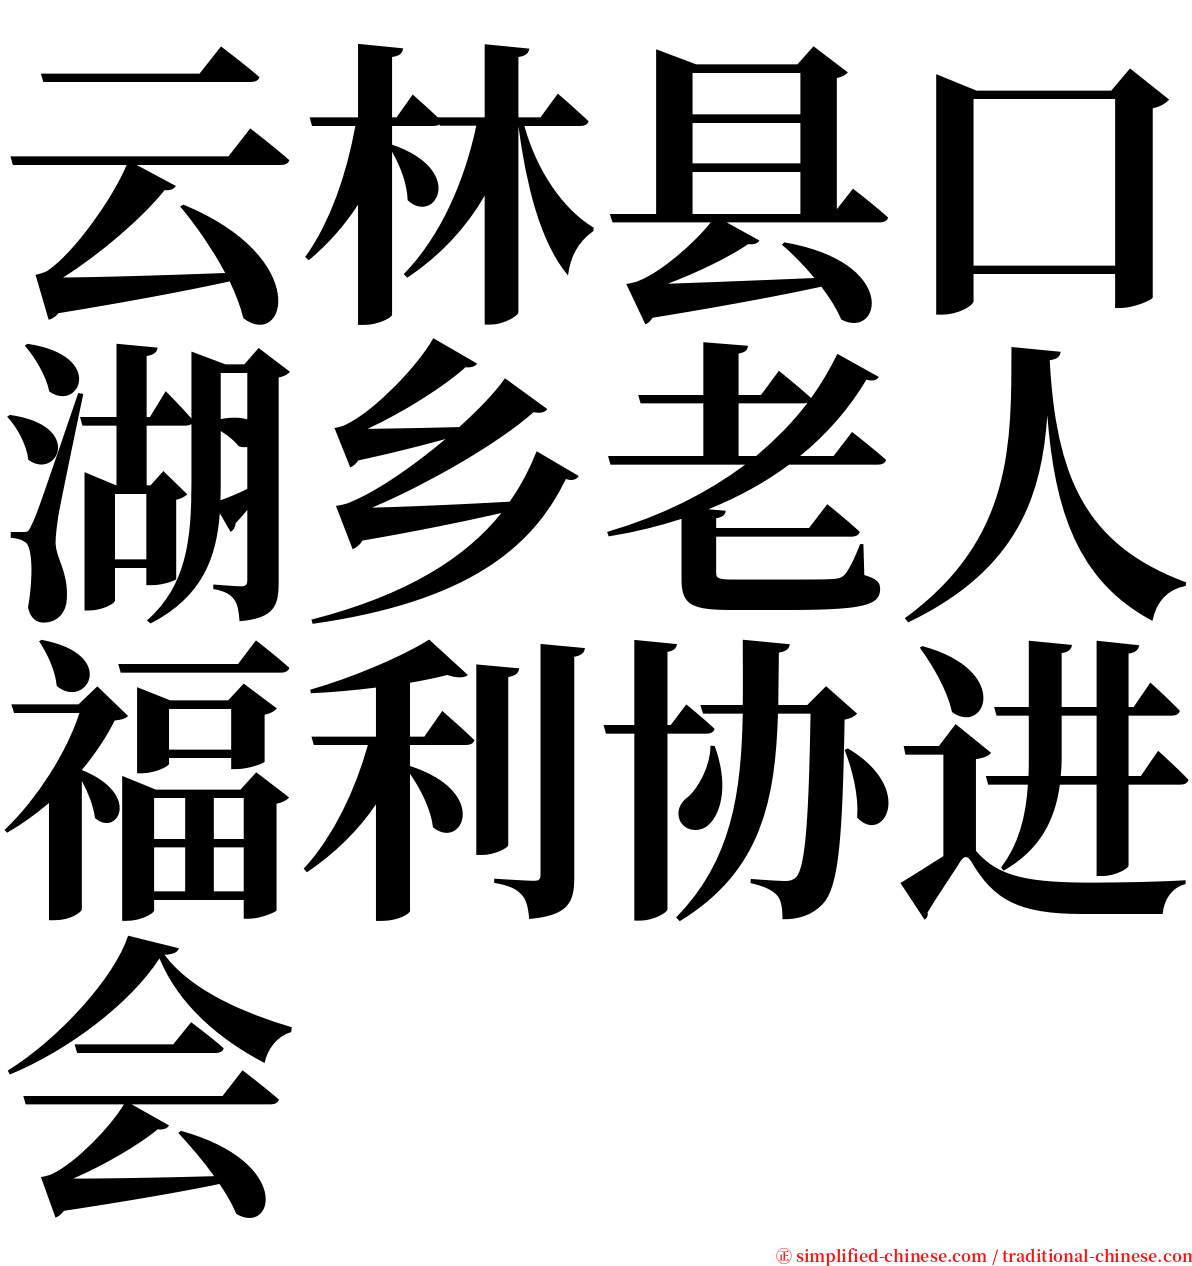 云林县口湖乡老人福利协进会 serif font